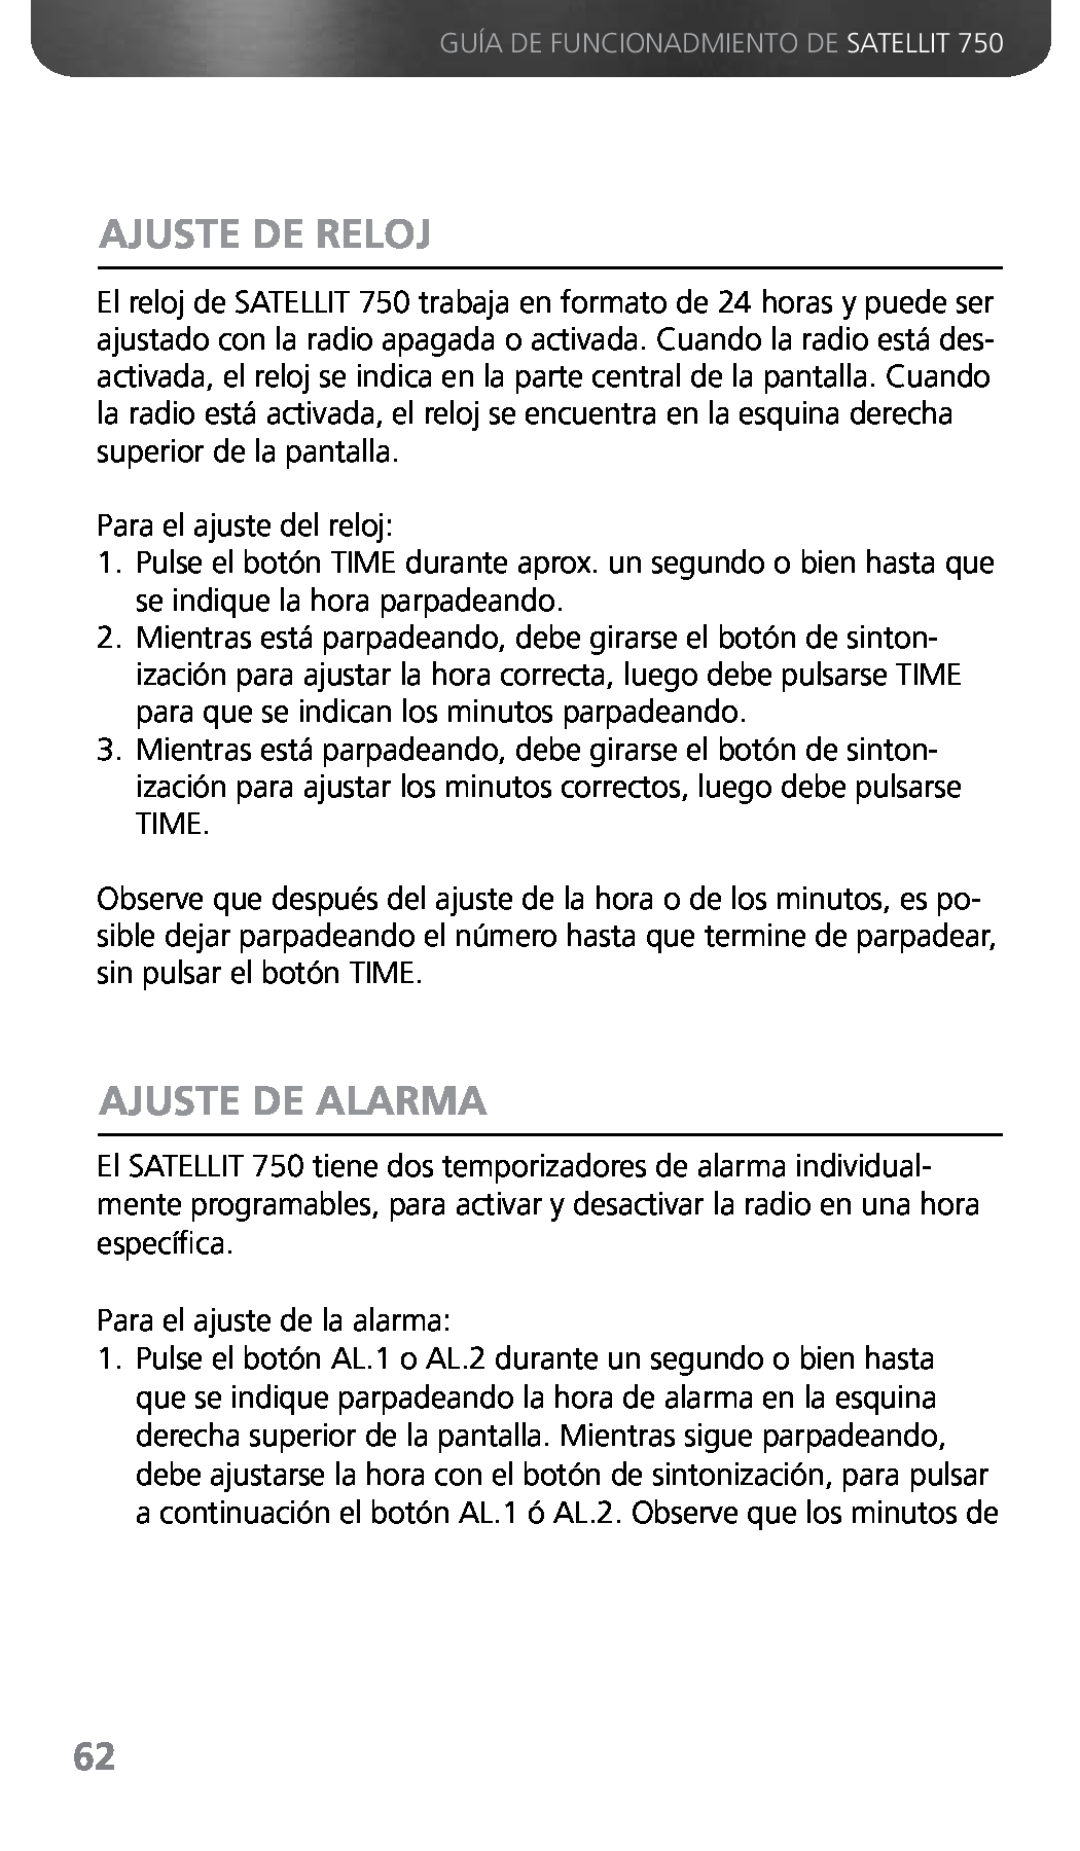 Grundig 750 owner manual Ajuste De Reloj, Ajuste De Alarma 